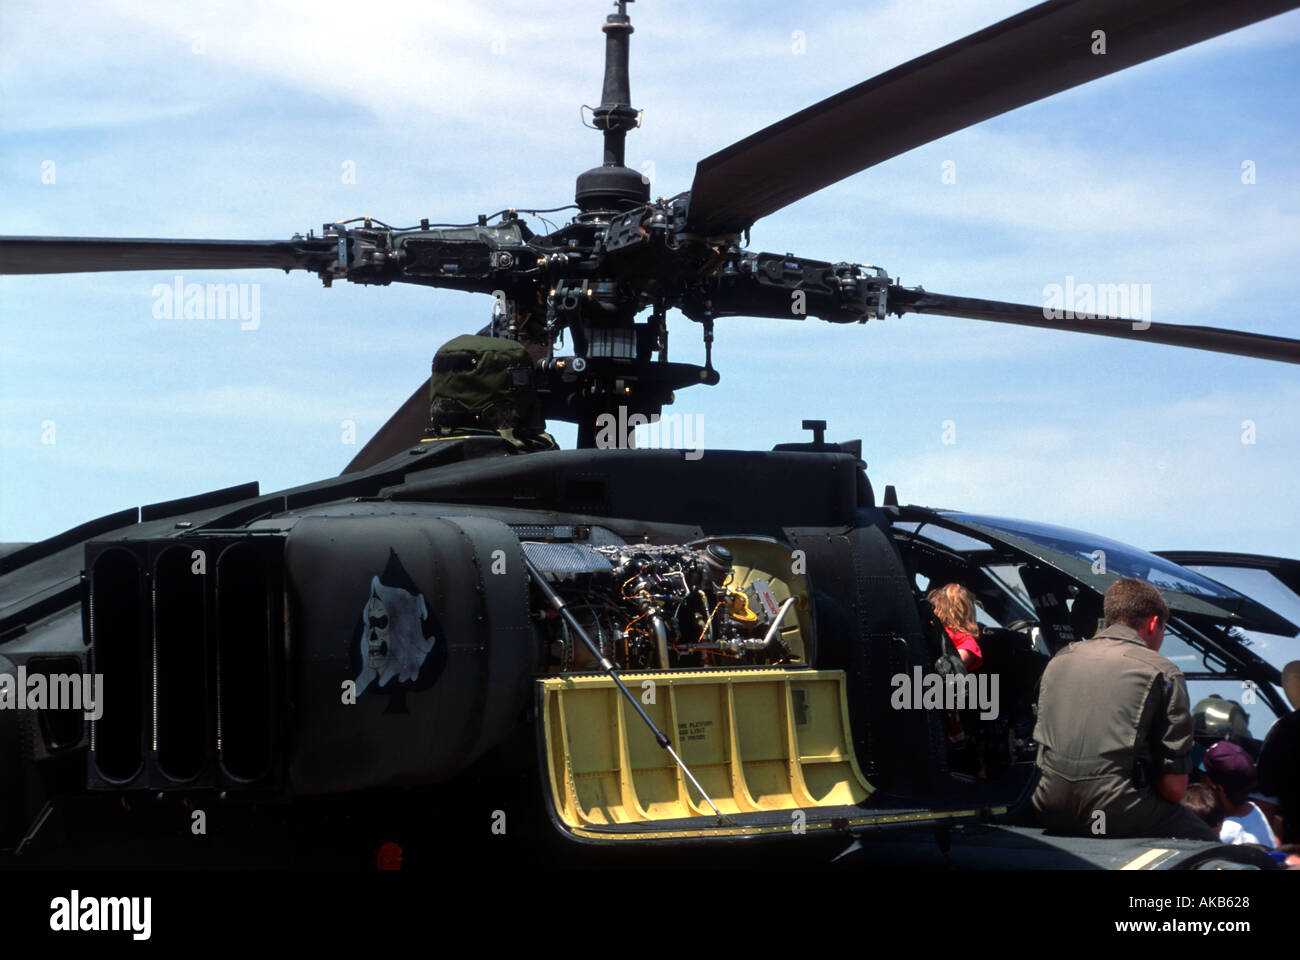 Une vue en gros plan d'un hélicoptère militaire ou du broyeur montre les mécanismes complexes et quatre lames singulier avec un panneau jaune vif Banque D'Images